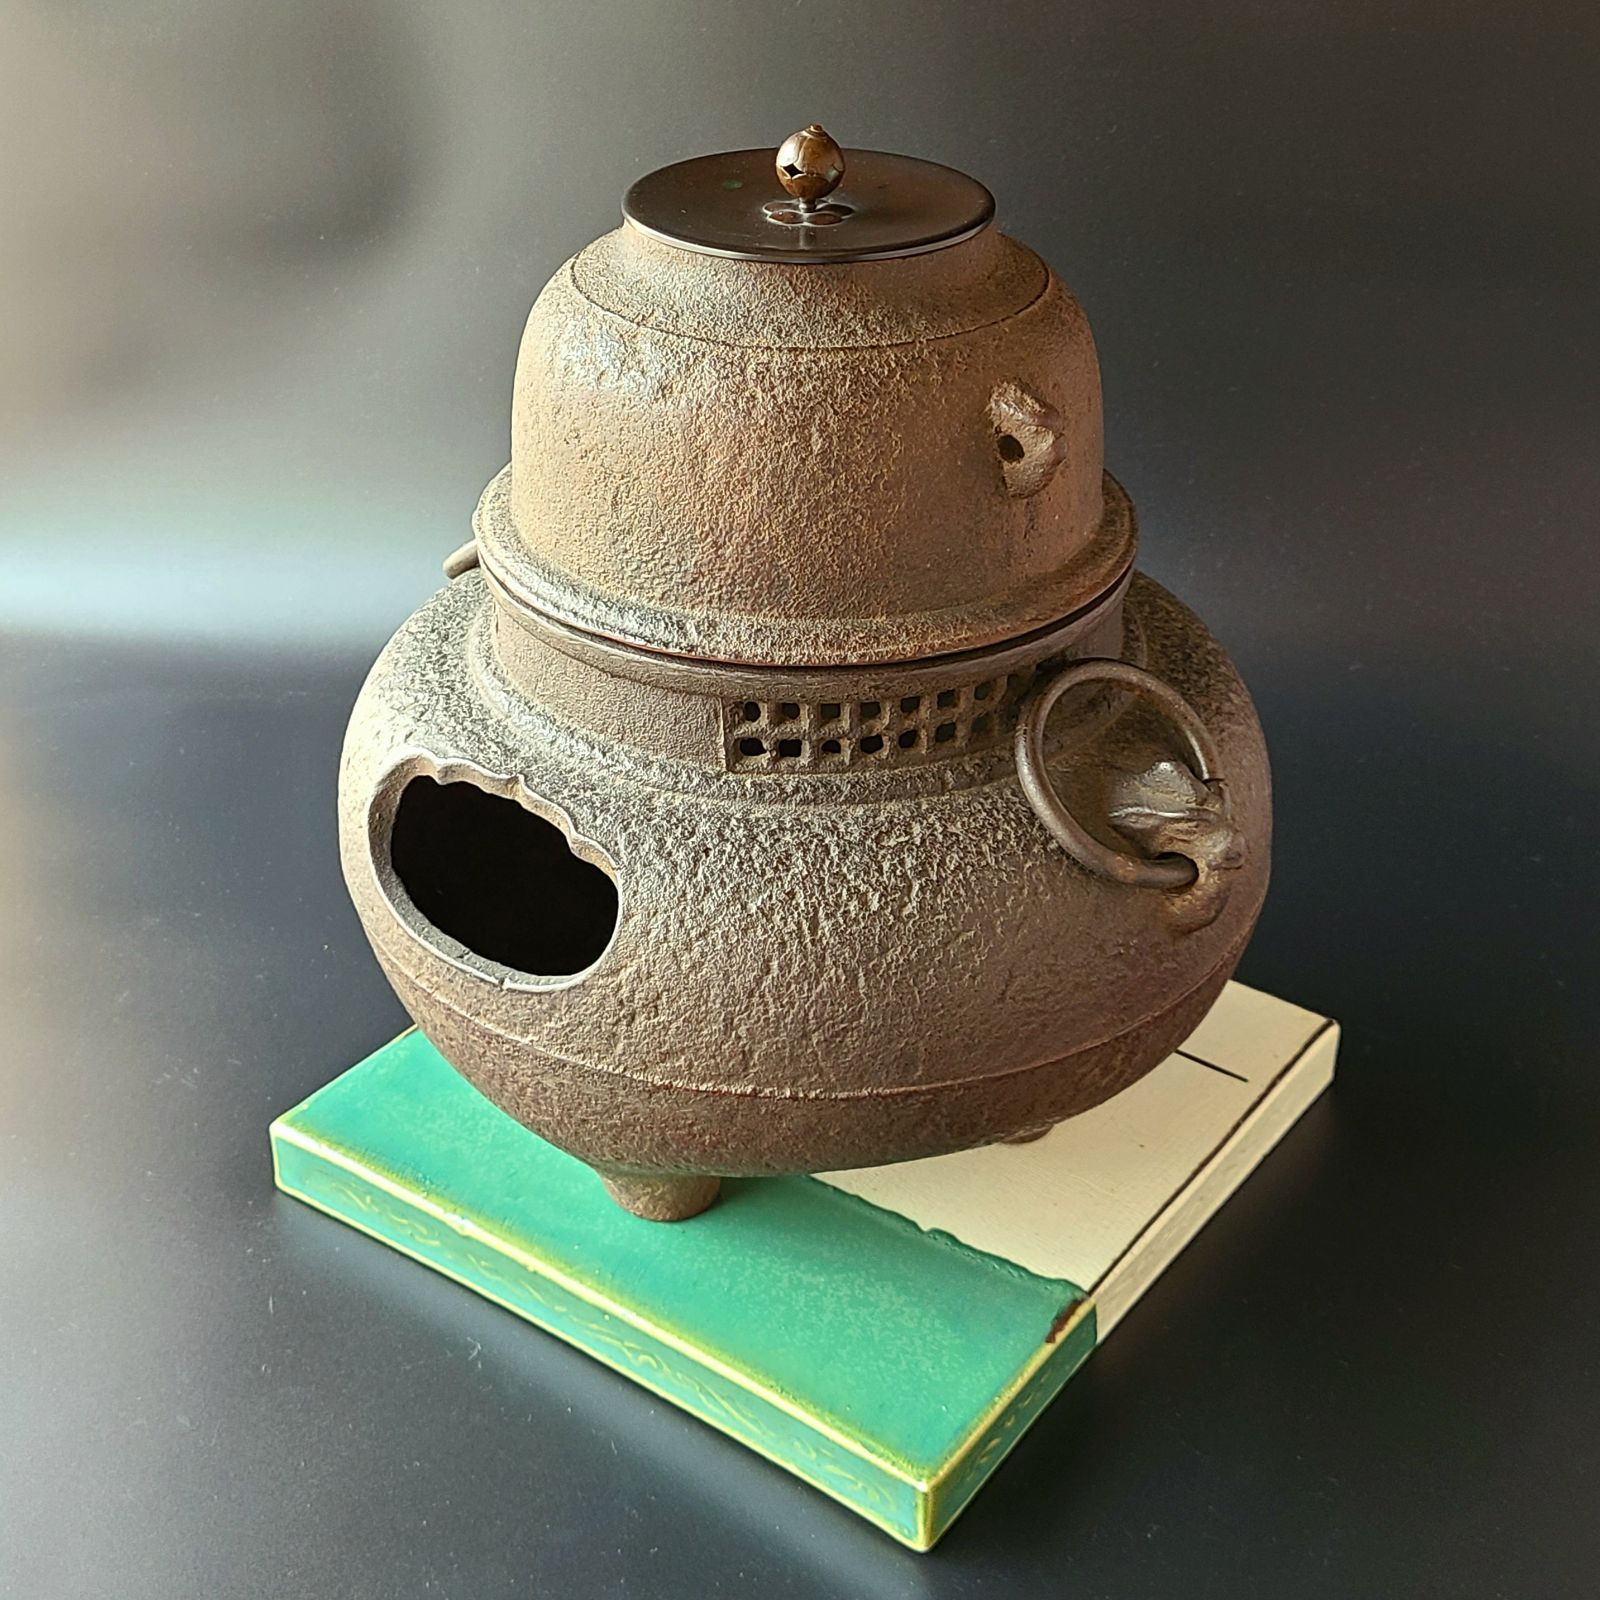 公式サイト 数量限定価格!! 茶道具 鉄製 鬼面風炉 時代 鋳物 茶の湯釜